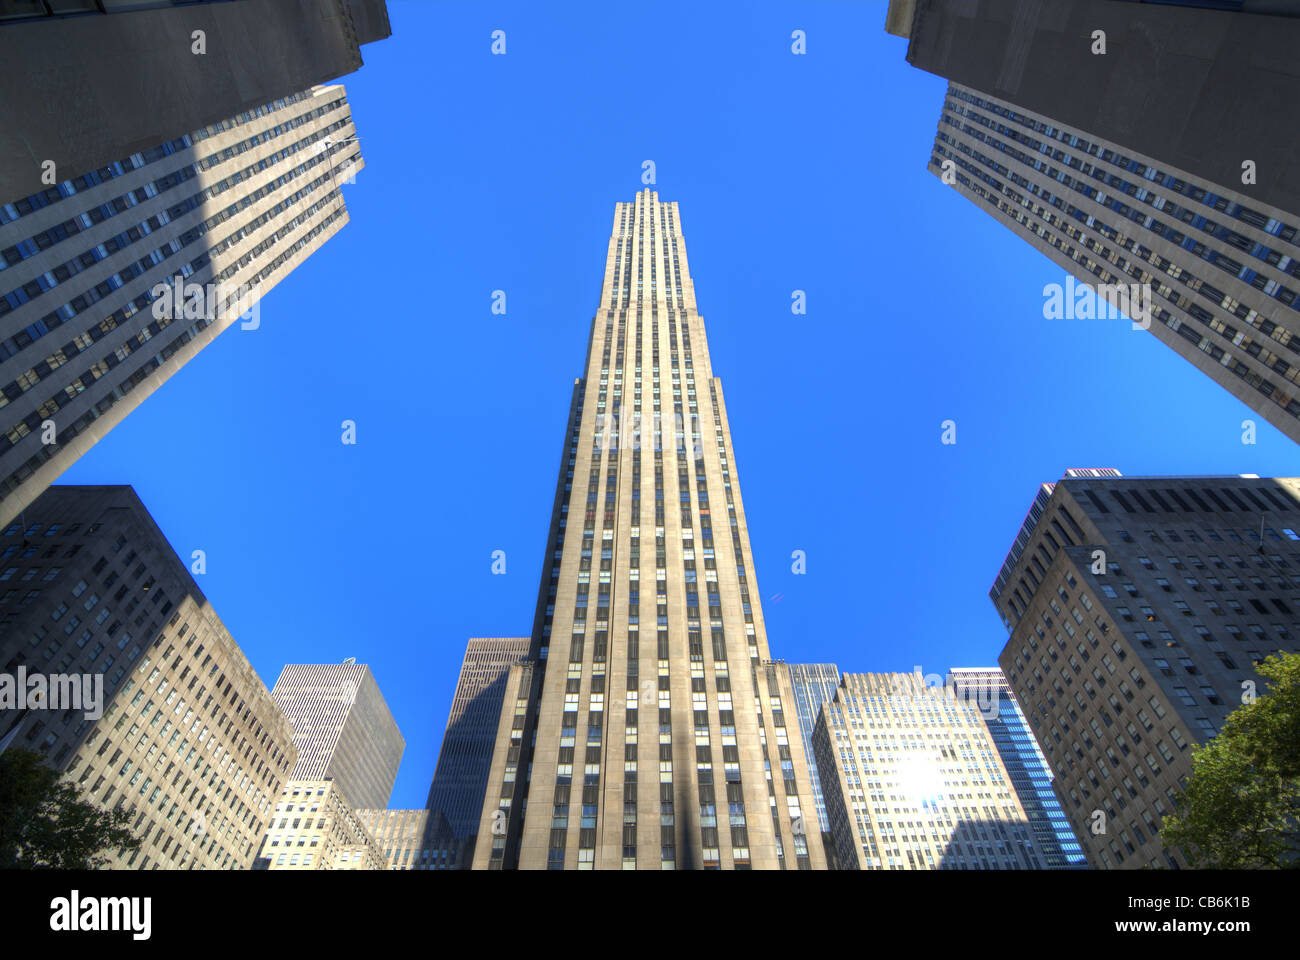 Le monde célèbre GE Building du Rockefeller Center à New York. Banque D'Images